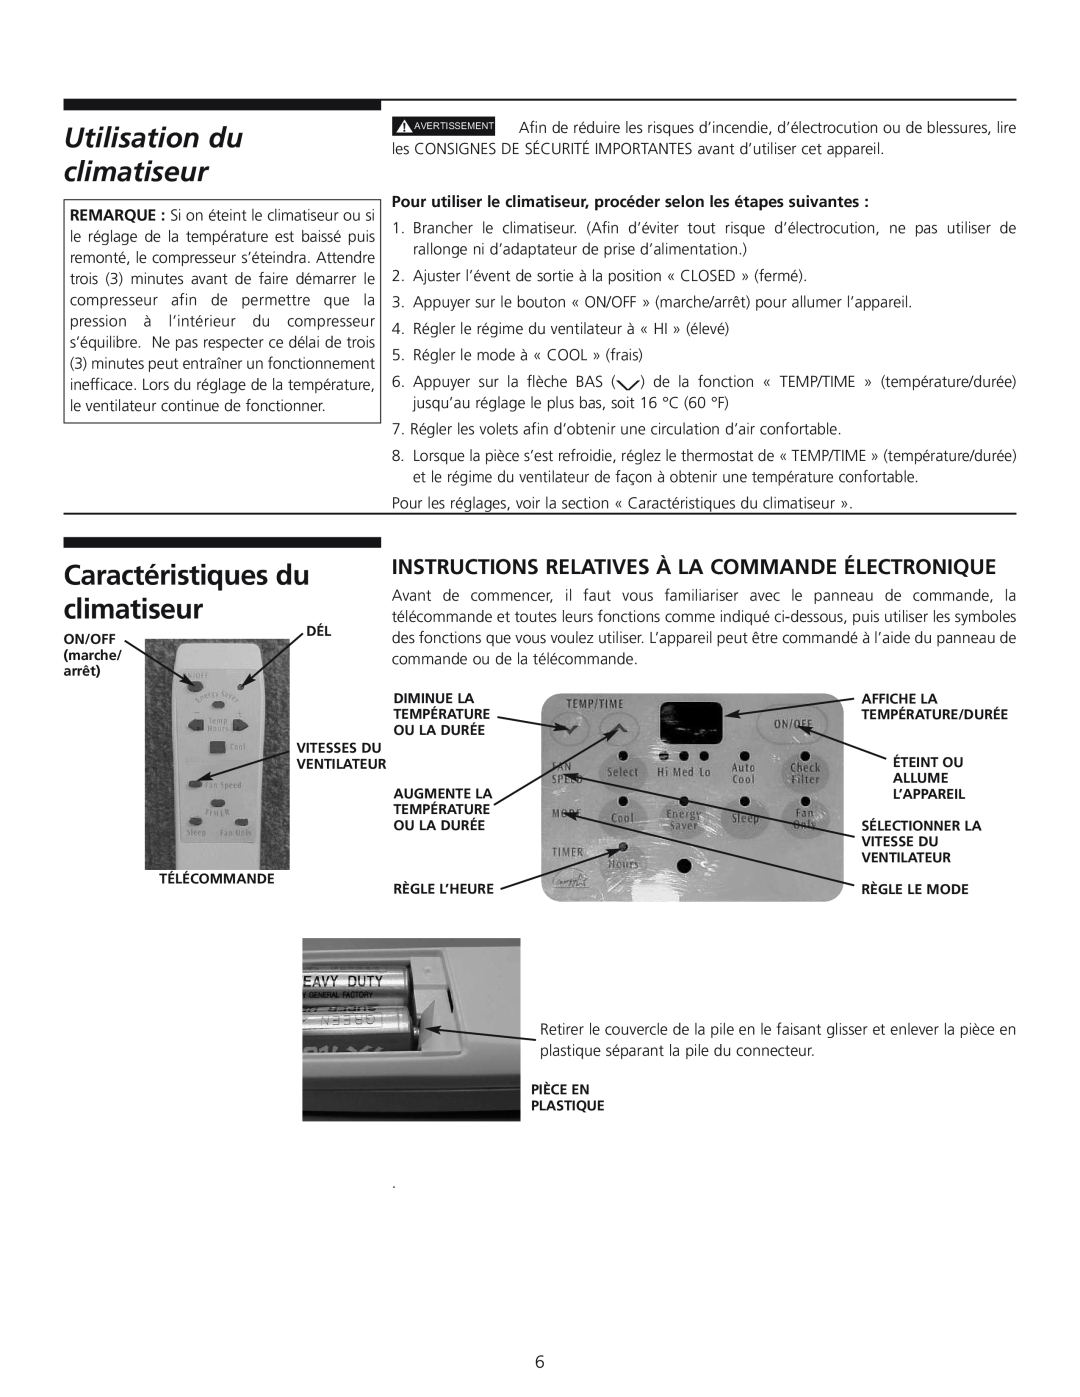 Frigidaire 309000848 manual Utilisation du climatiseur, Caractéristiques du climatiseur 